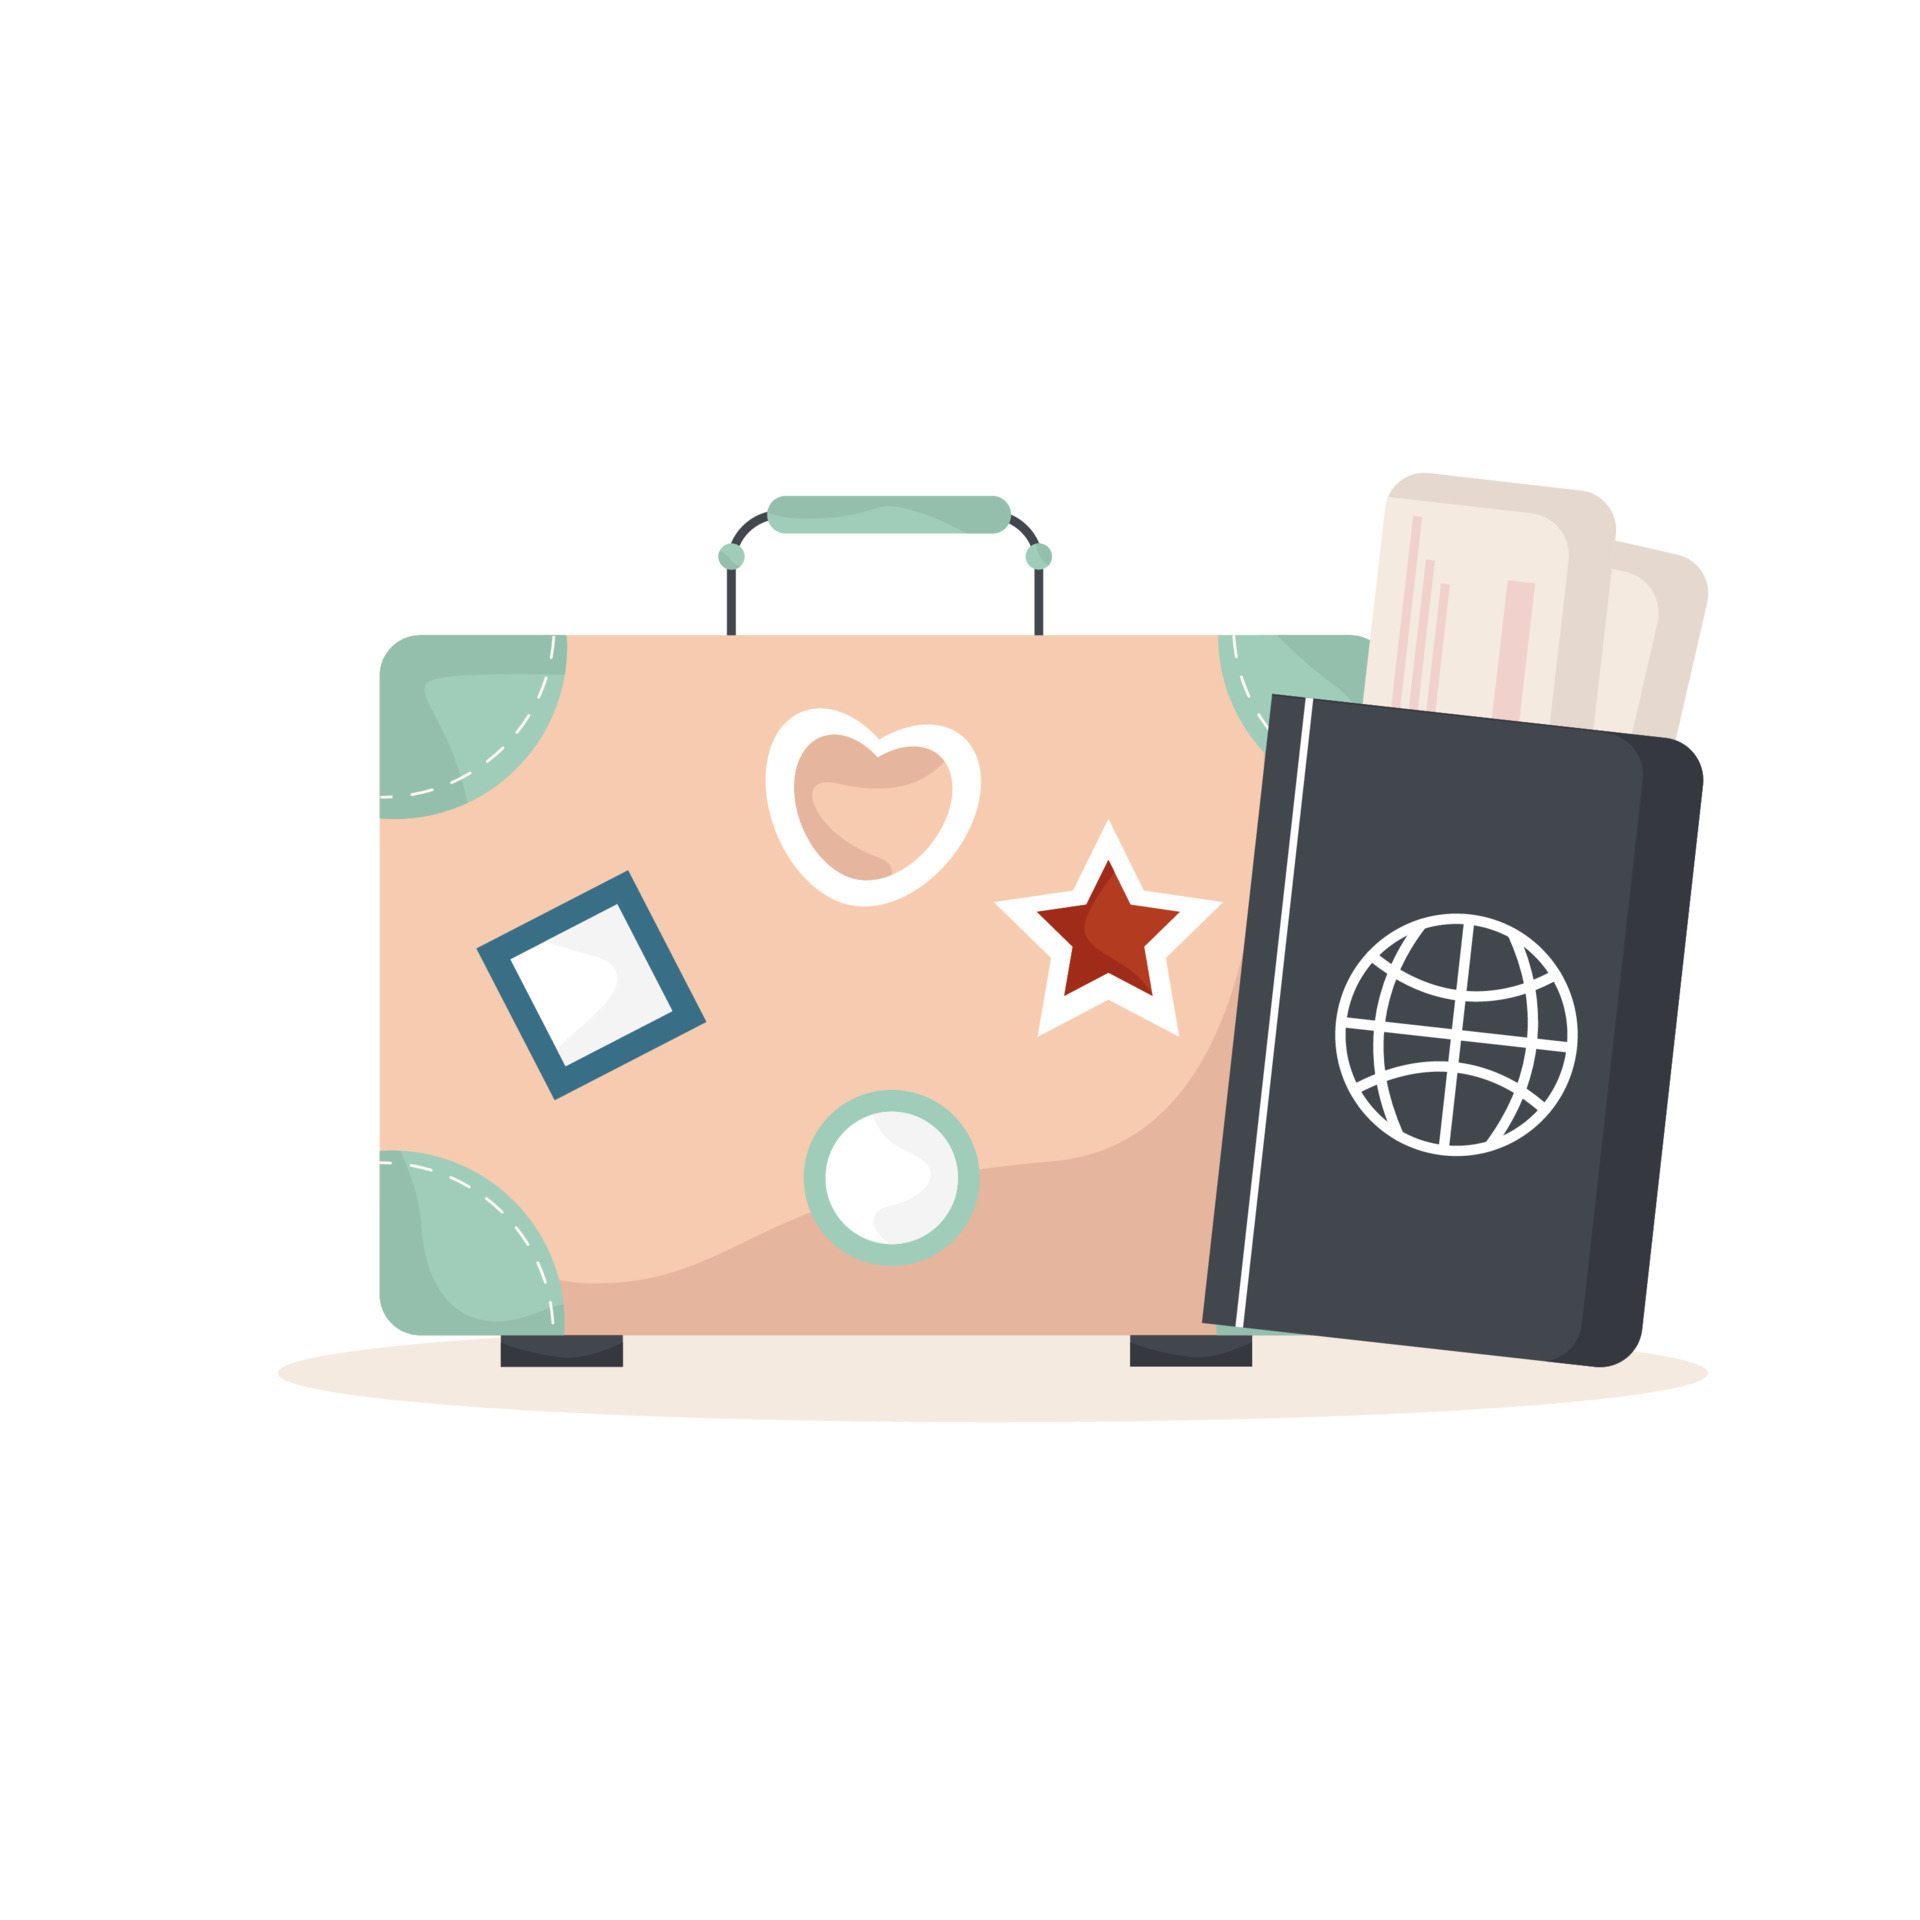 Hành lý du lịch là trung tâm của mọi chuyến đi của bạn. Hãy xem qua hình ảnh và dành thời gian để tìm kiếm chiếc vali hoàn hảo cho chính mình. Với những thiết kế đa dạng và tiện ích độc đáo, bạn sẽ tìm thấy chiếc vali lý tưởng để giúp bạn tiếp tục khám phá văn hóa và danh lam thắng cảnh của những điểm đến mới.